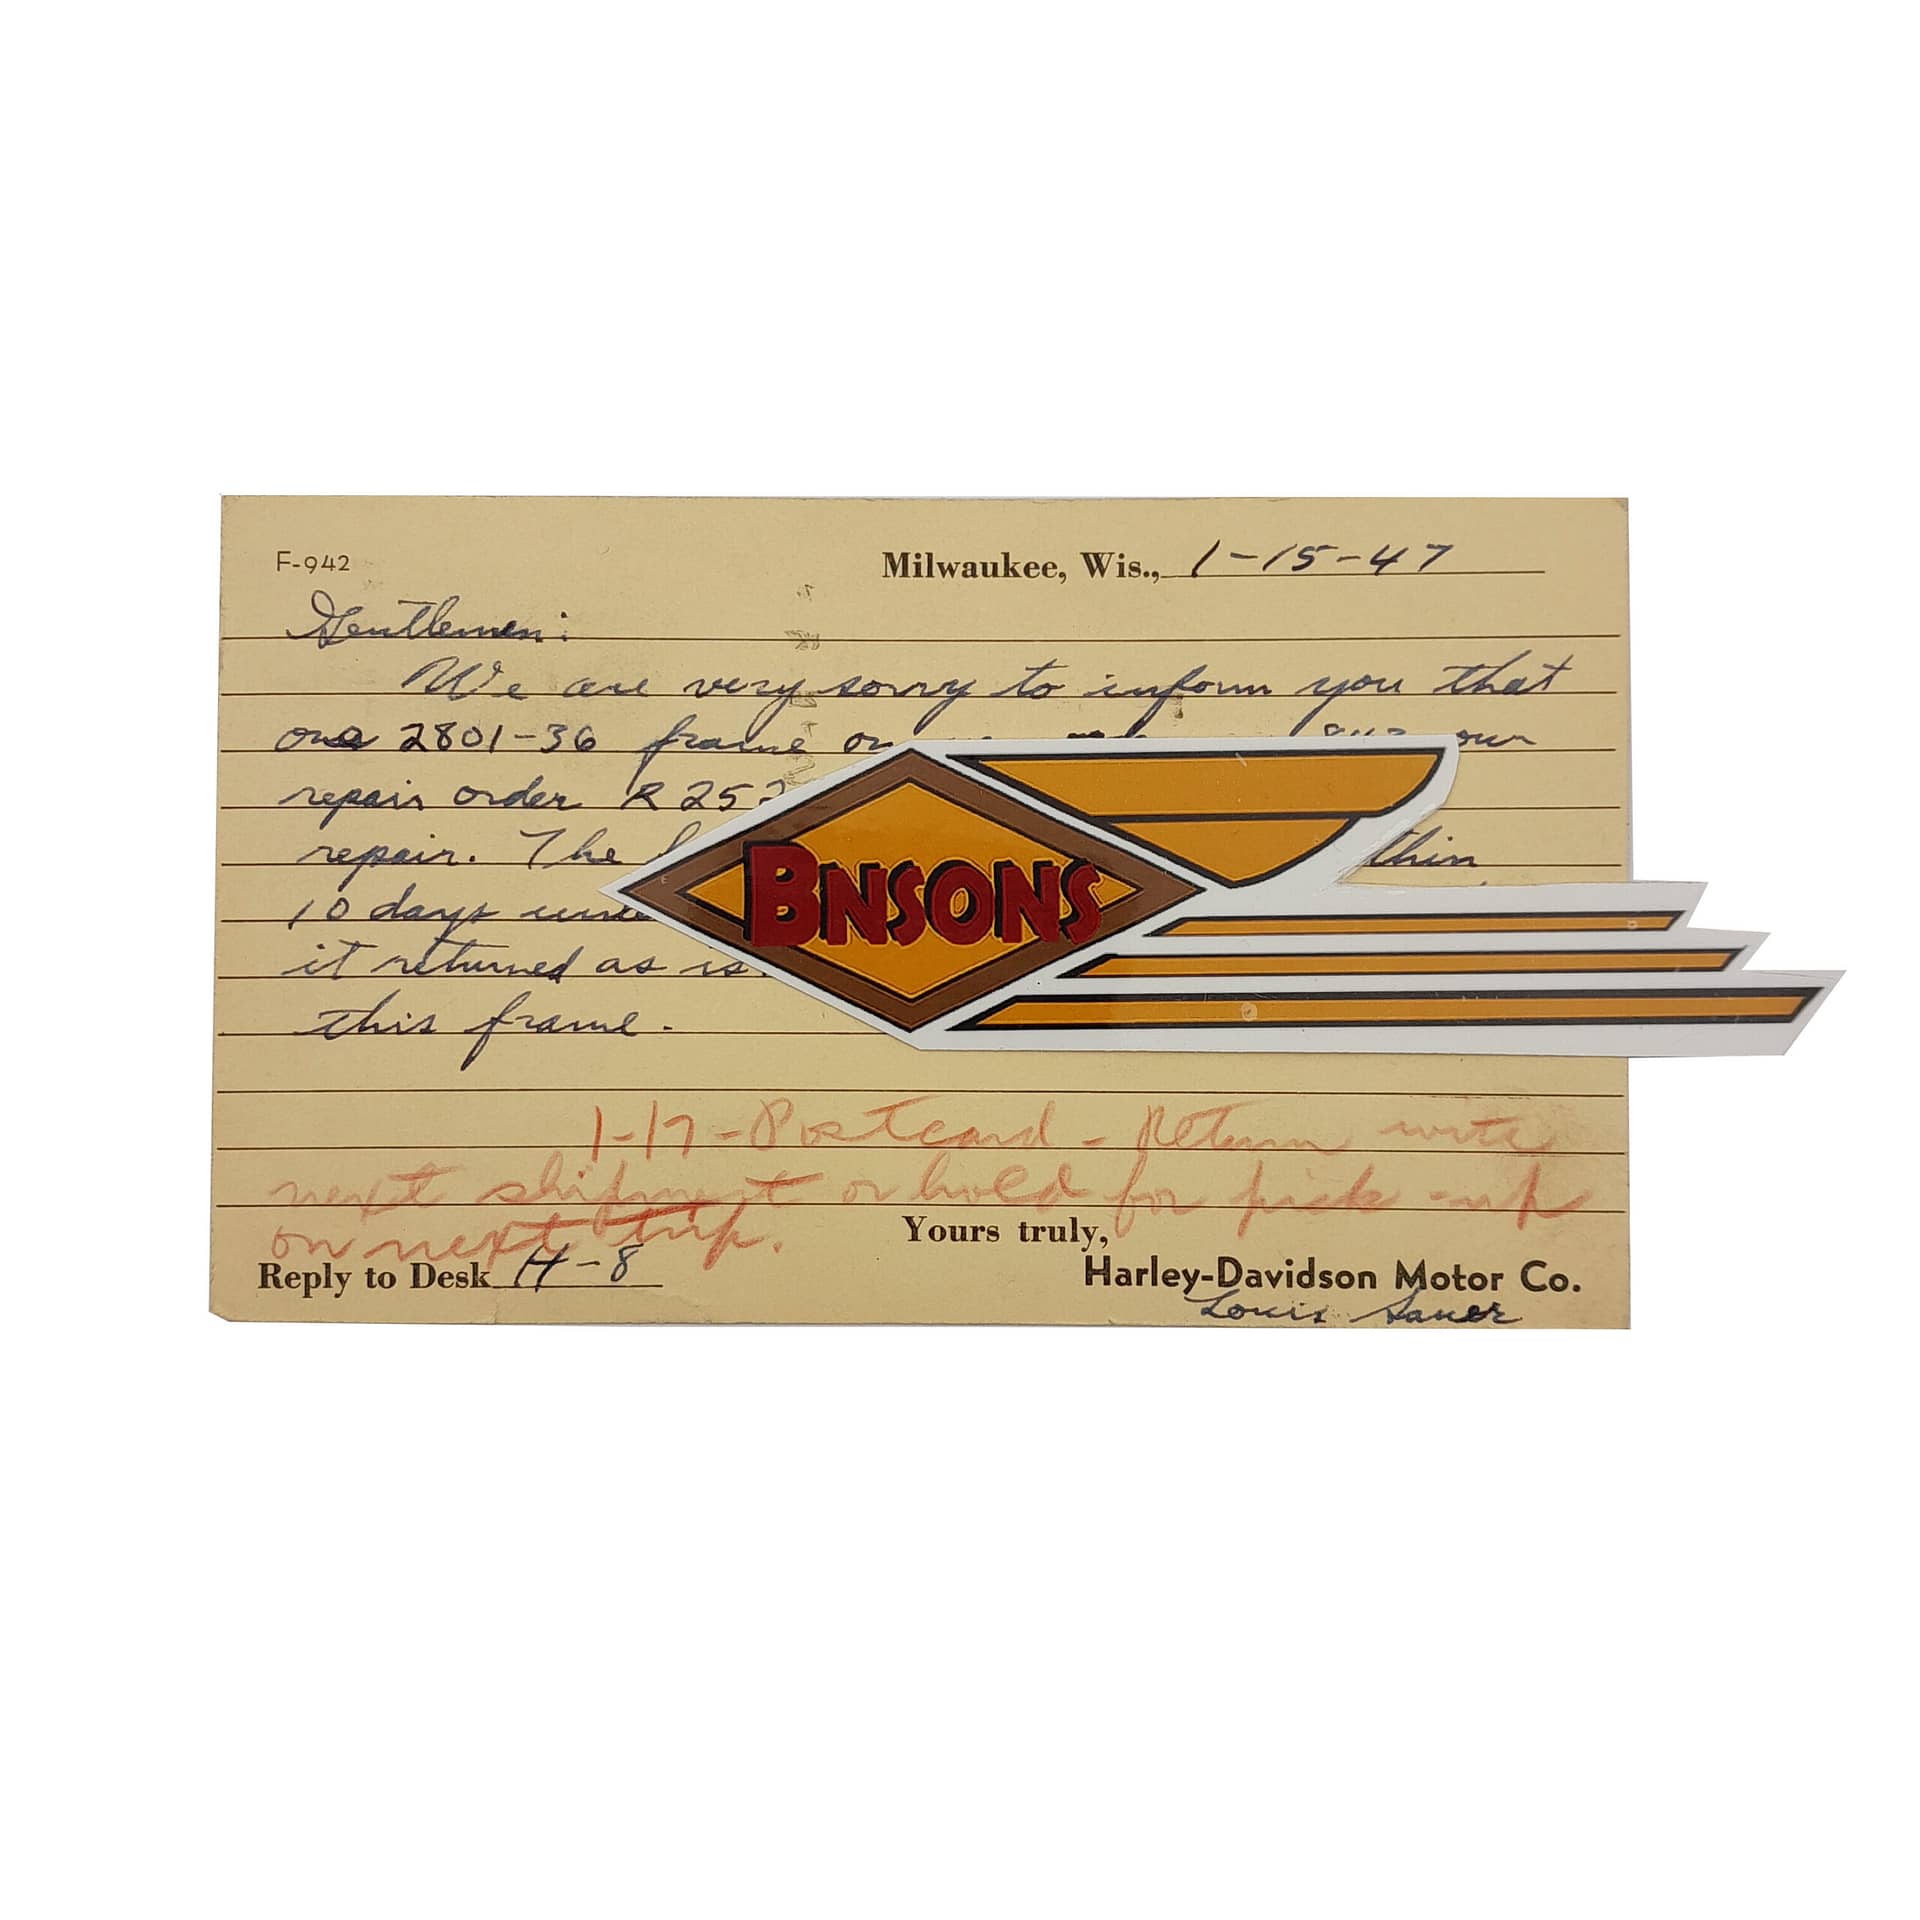 ORIG HARLEY 1947 FACTORY REPAIR CARD “FRAME BEYOUND REPAIR. – KNUCKLEHEAD